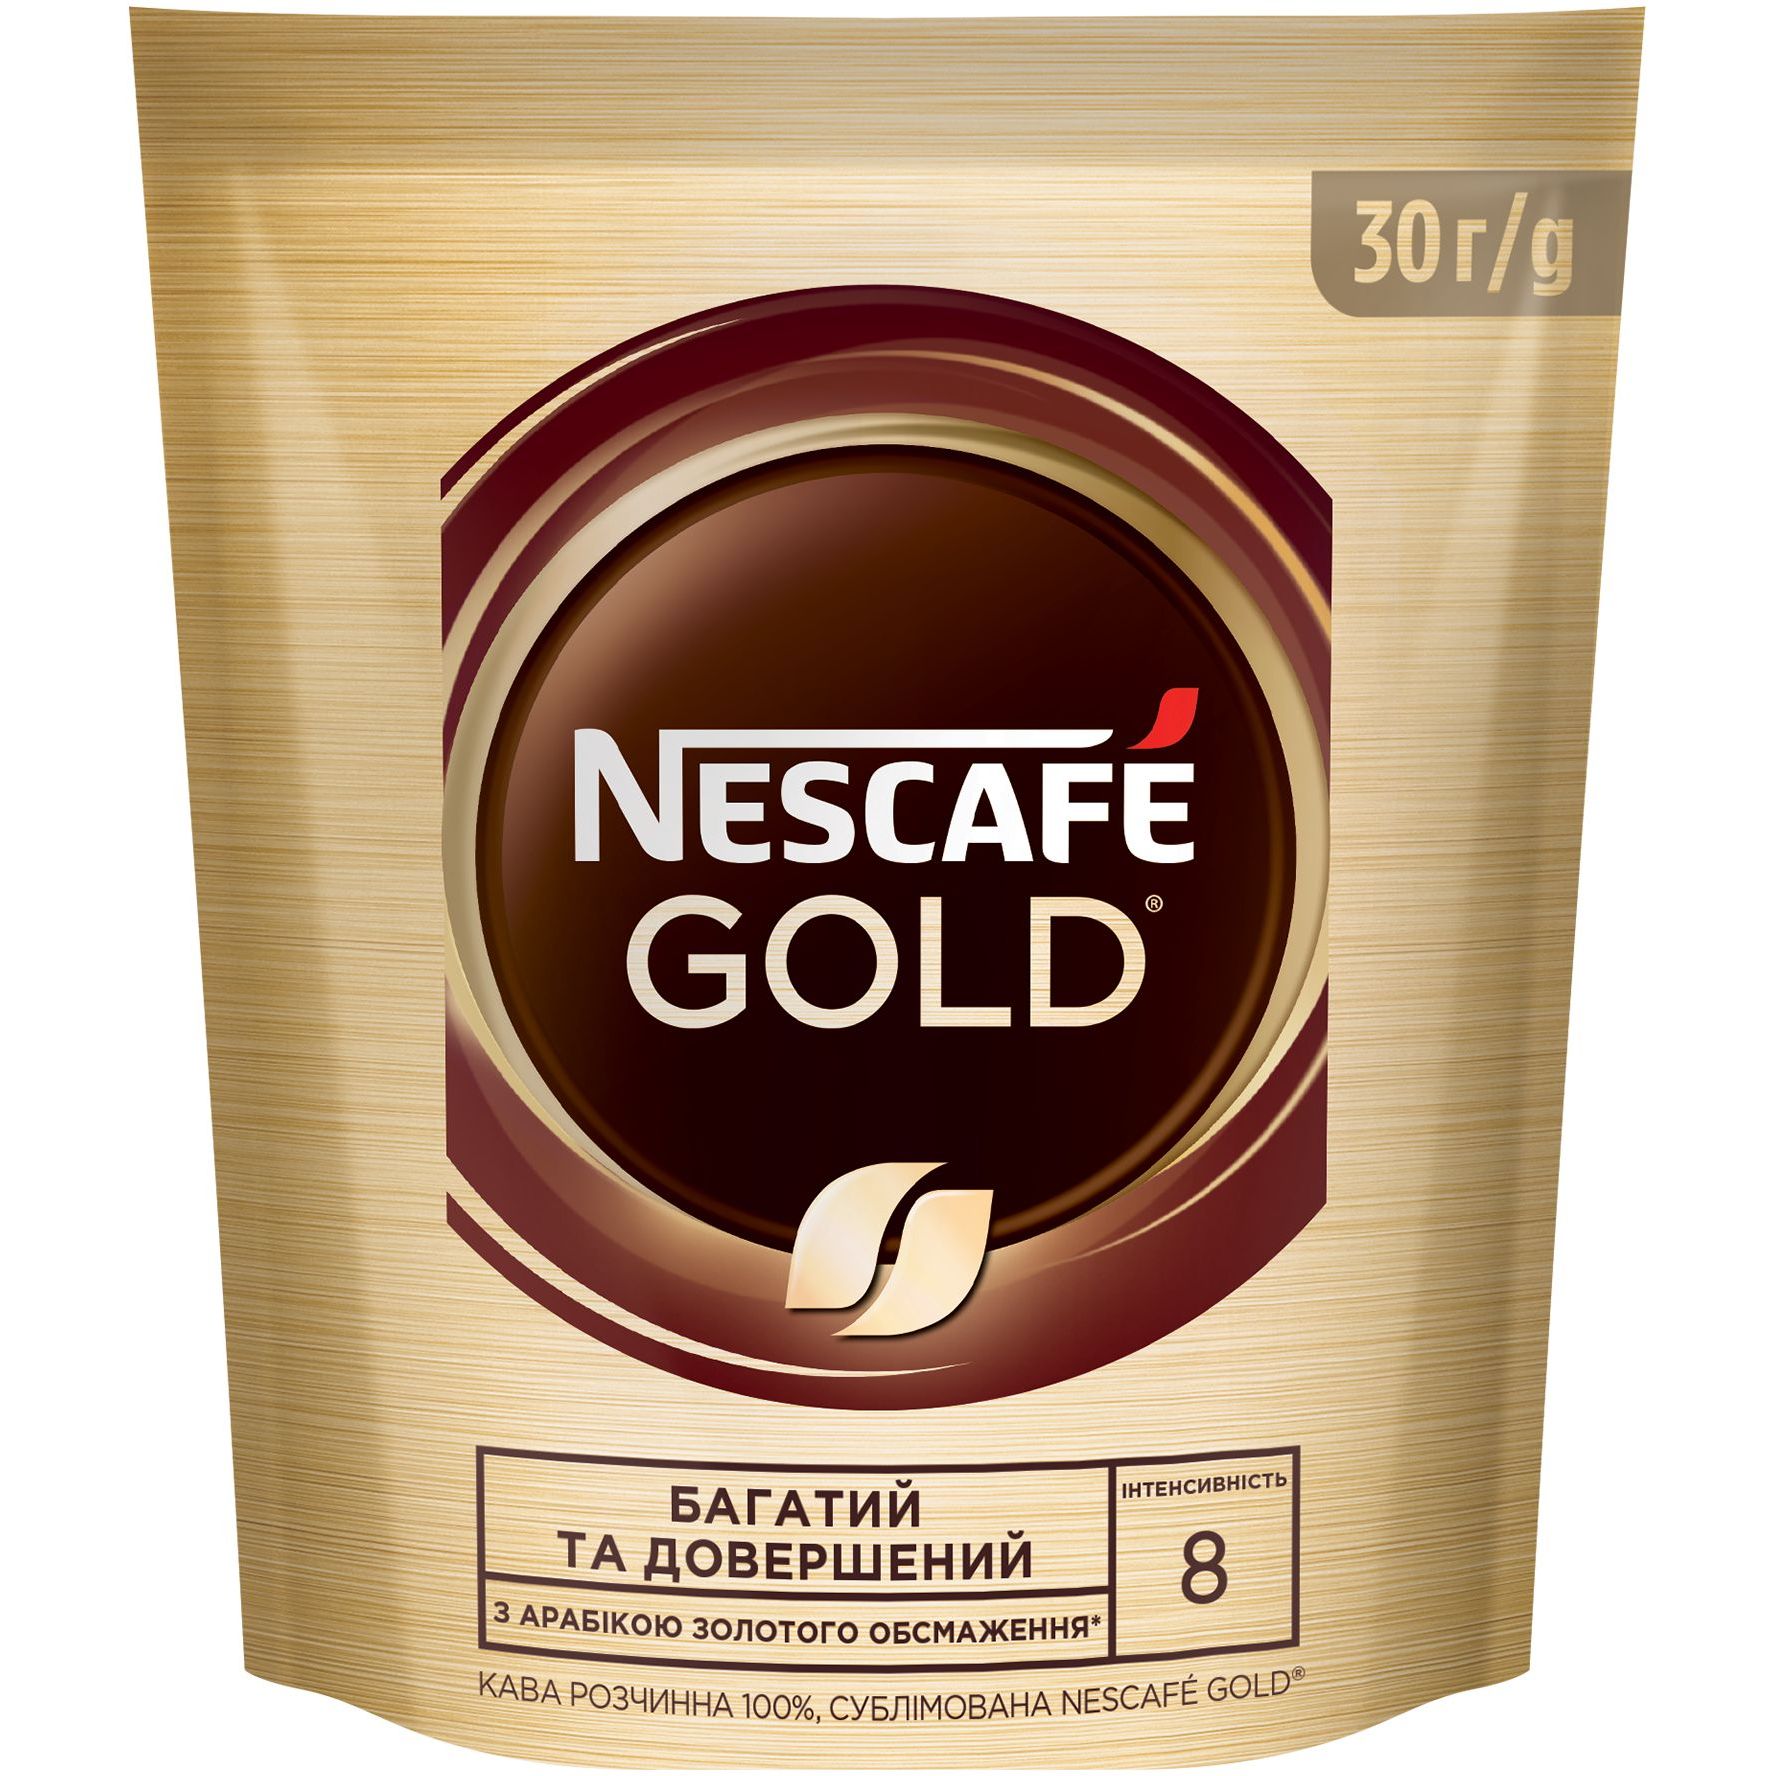 Кава розчинна Nescafe Gold 30 г - фото 1